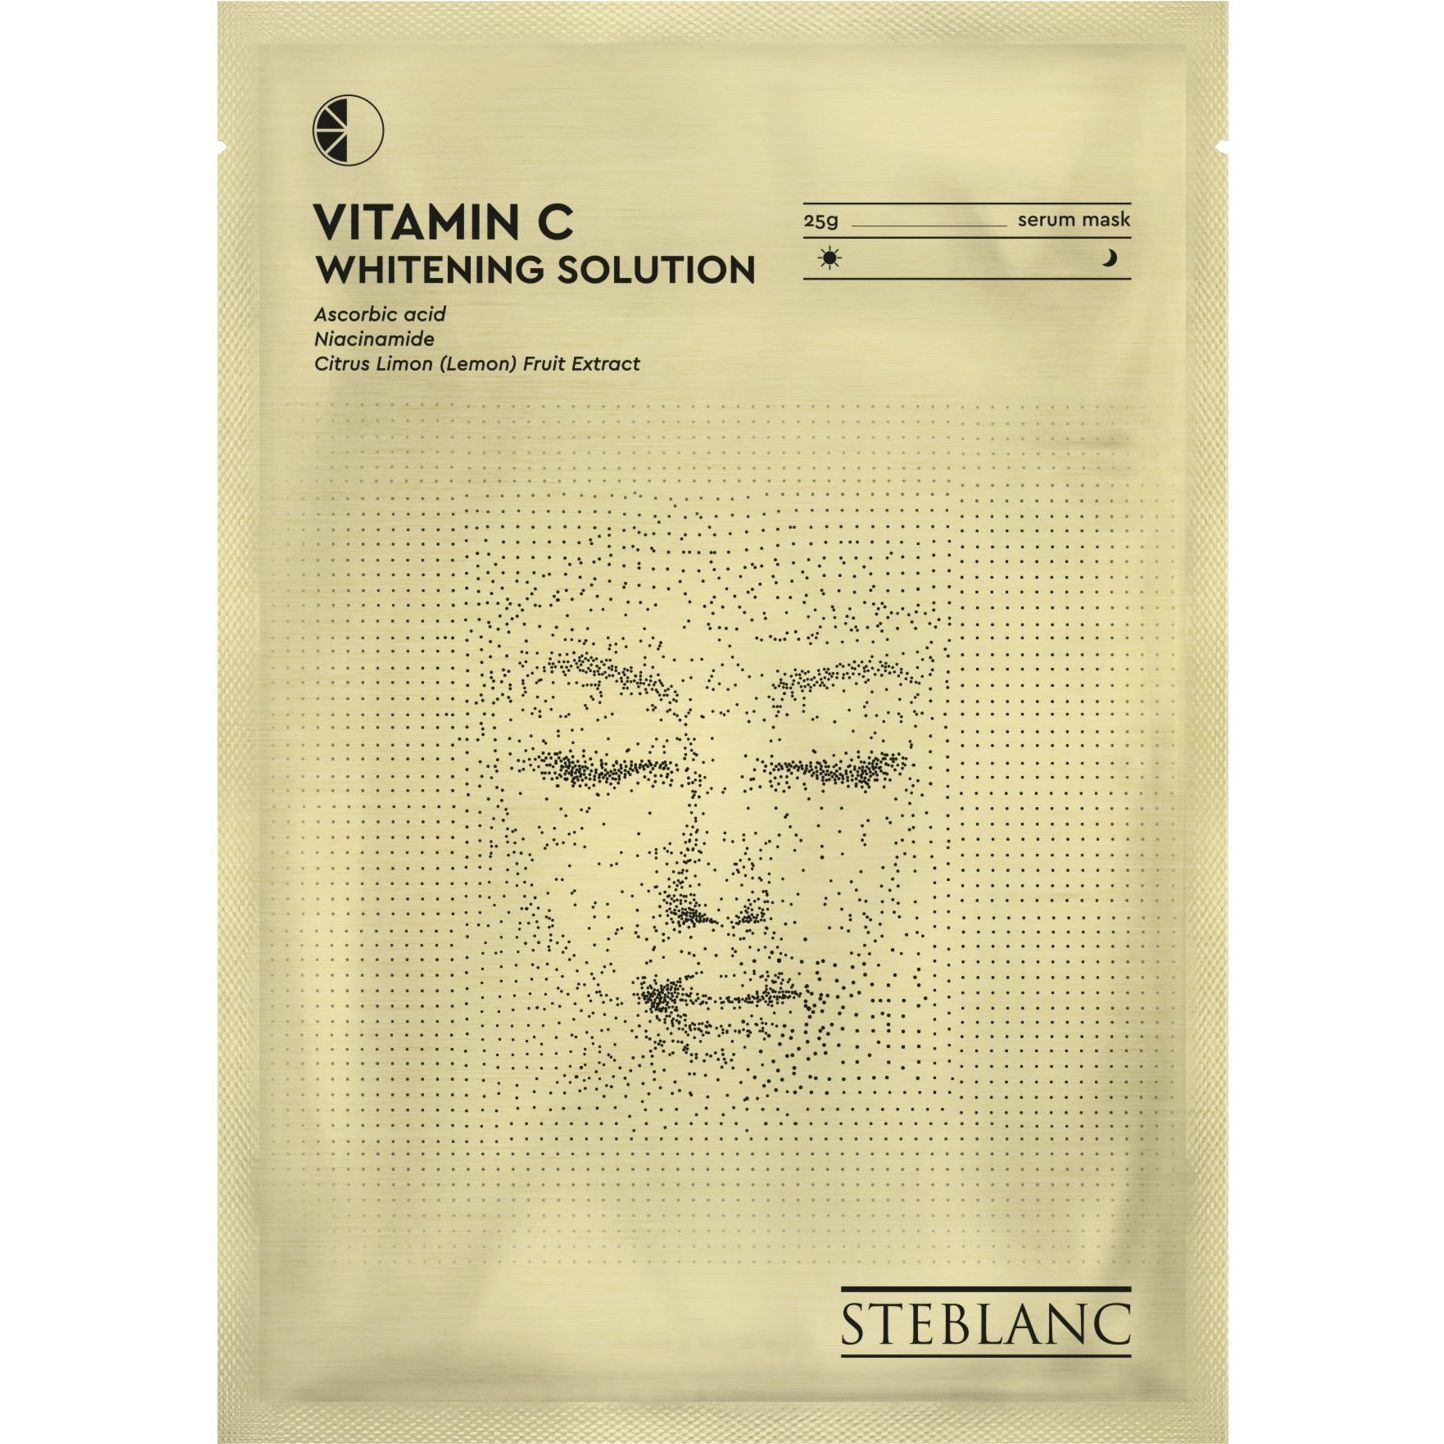 Тканевая маска-сыворотка для лица Steblanc Vitamin C Whitening Solution осветляющая с витамином С, 25 г - фото 1